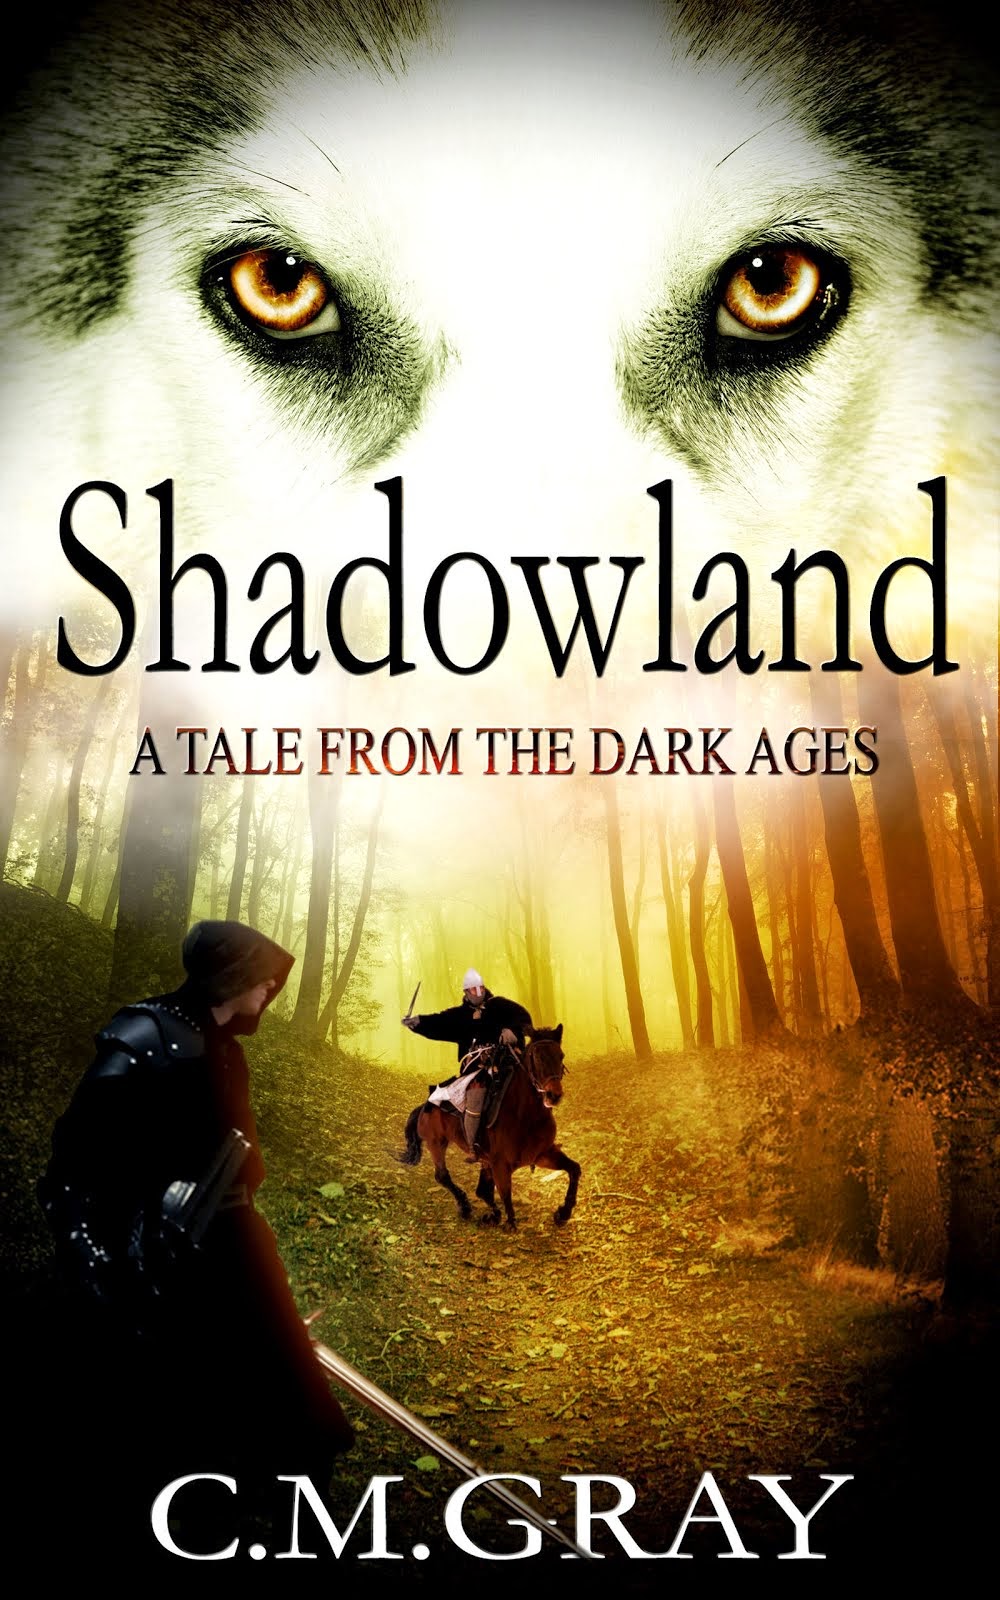 Buy "Shadowland" on Amazon